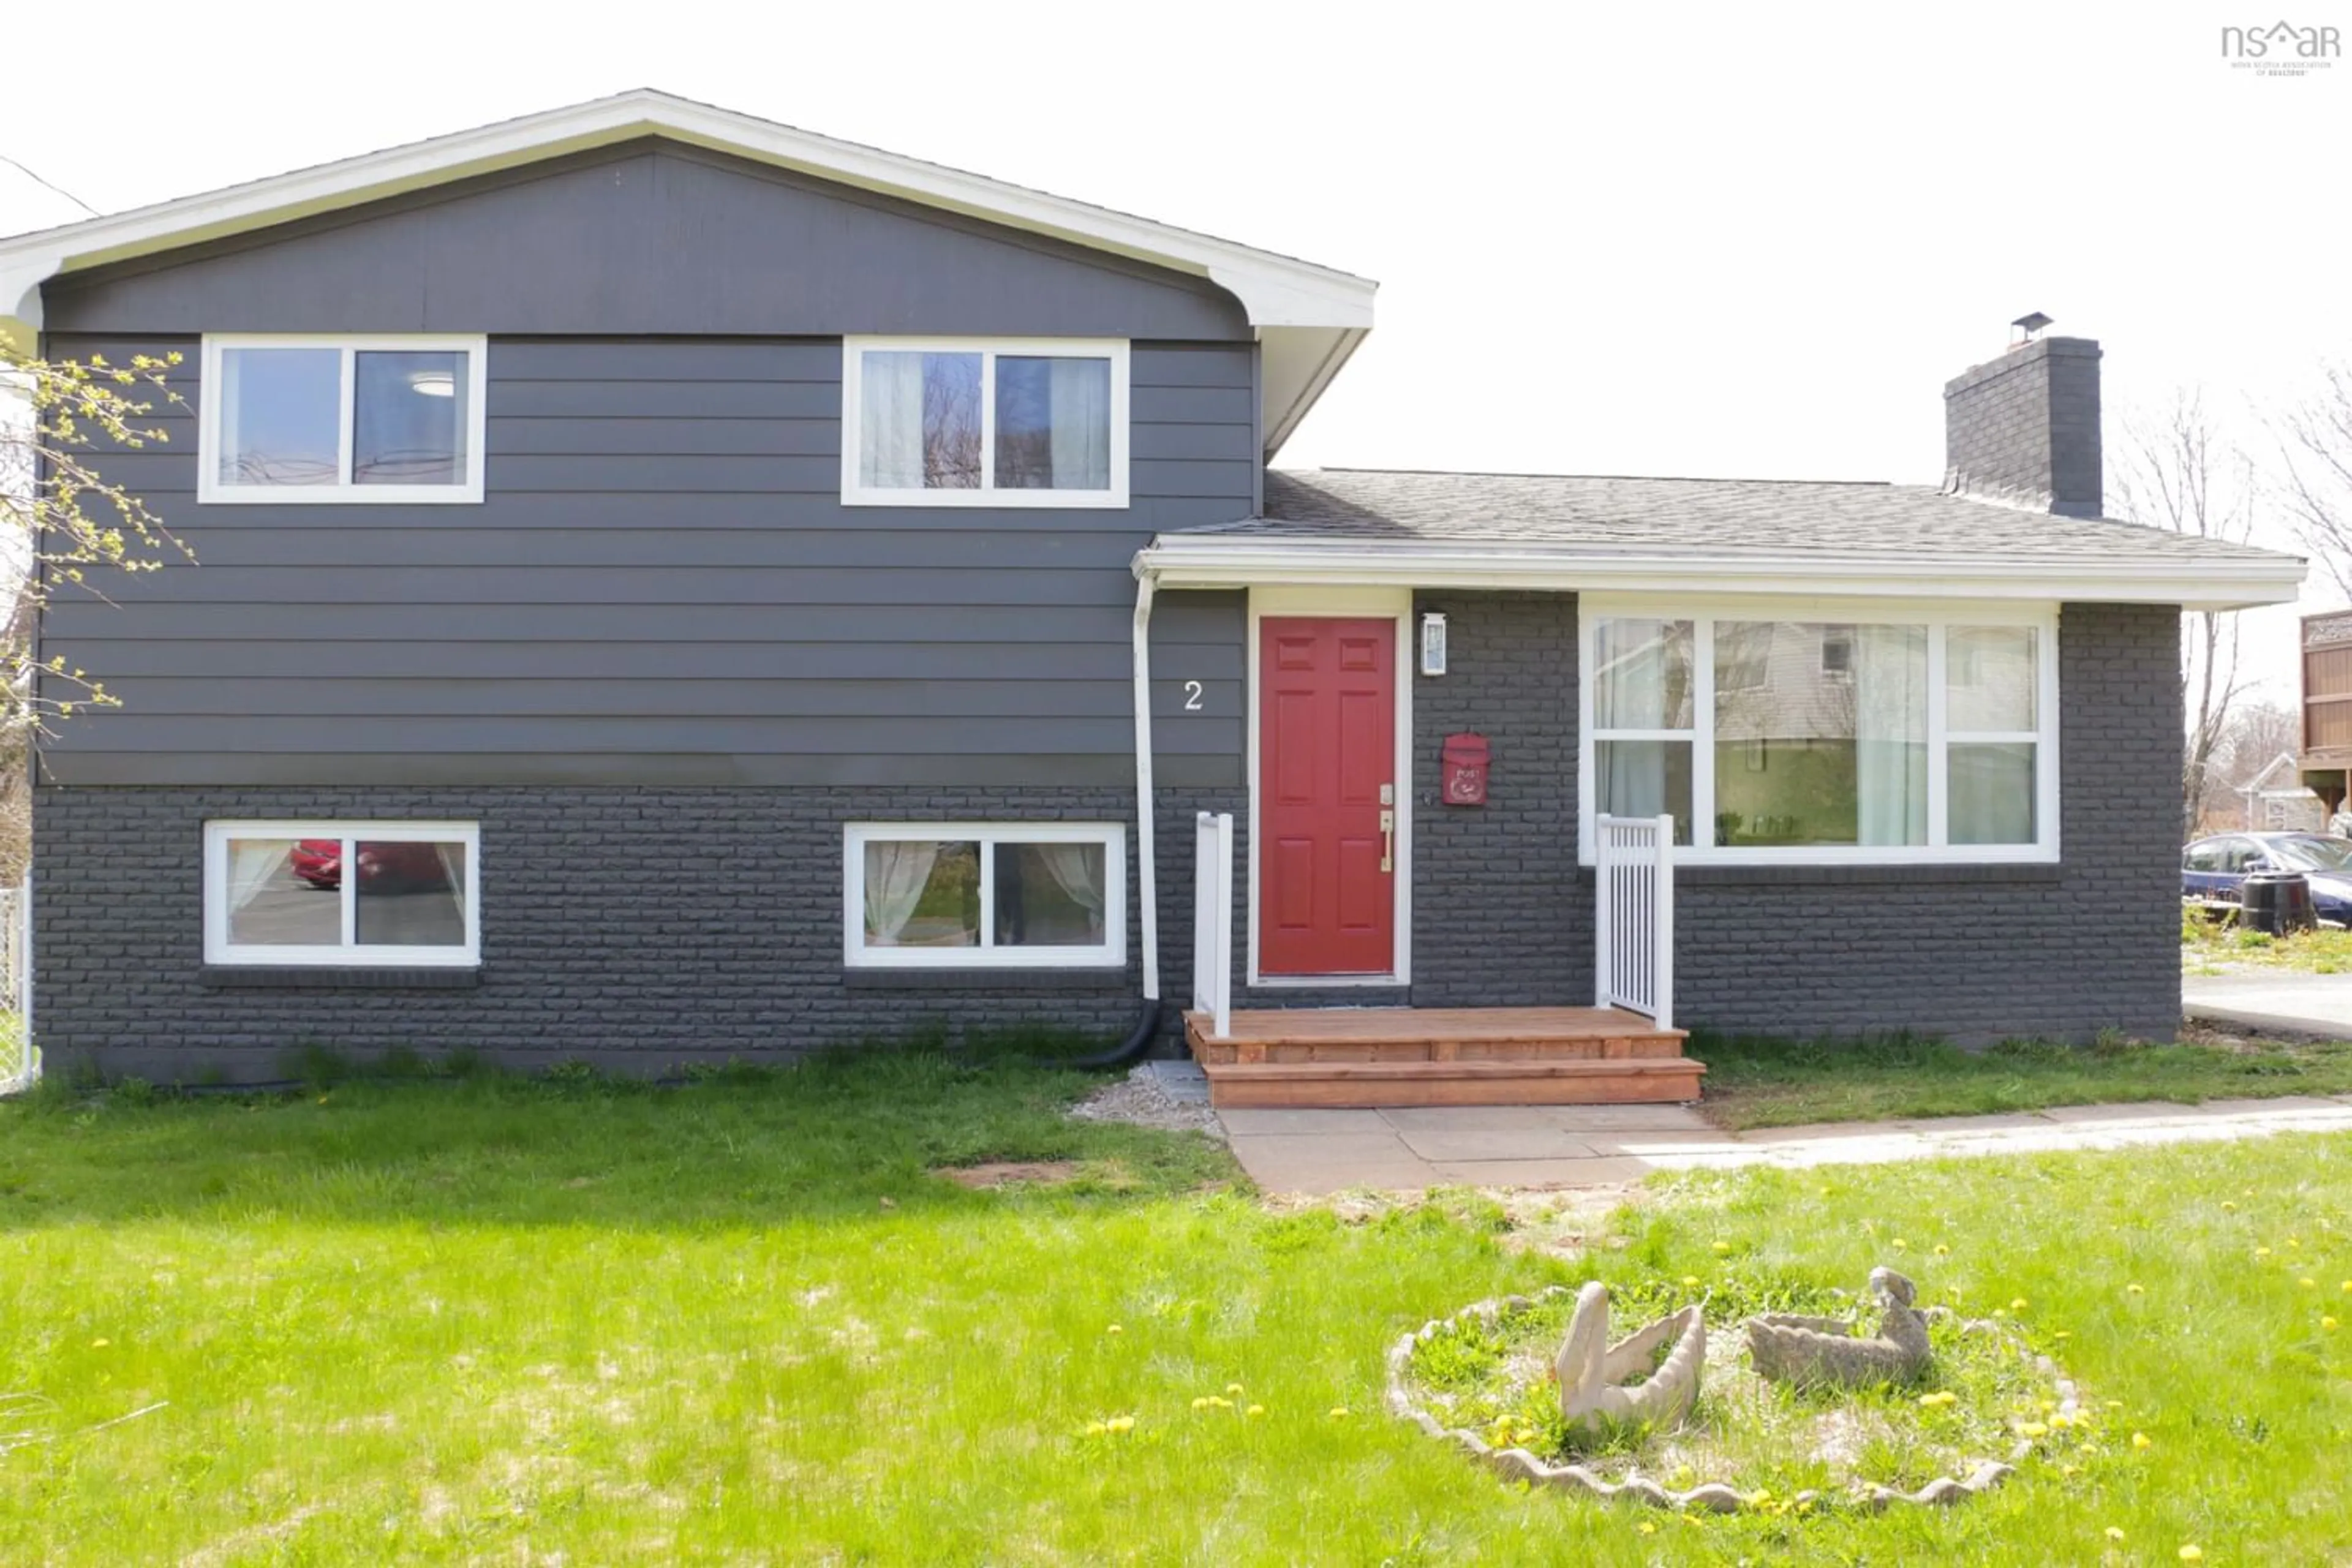 Home with vinyl exterior material for 2 Zinck Ave, Lower Sackville Nova Scotia B4C 1V7